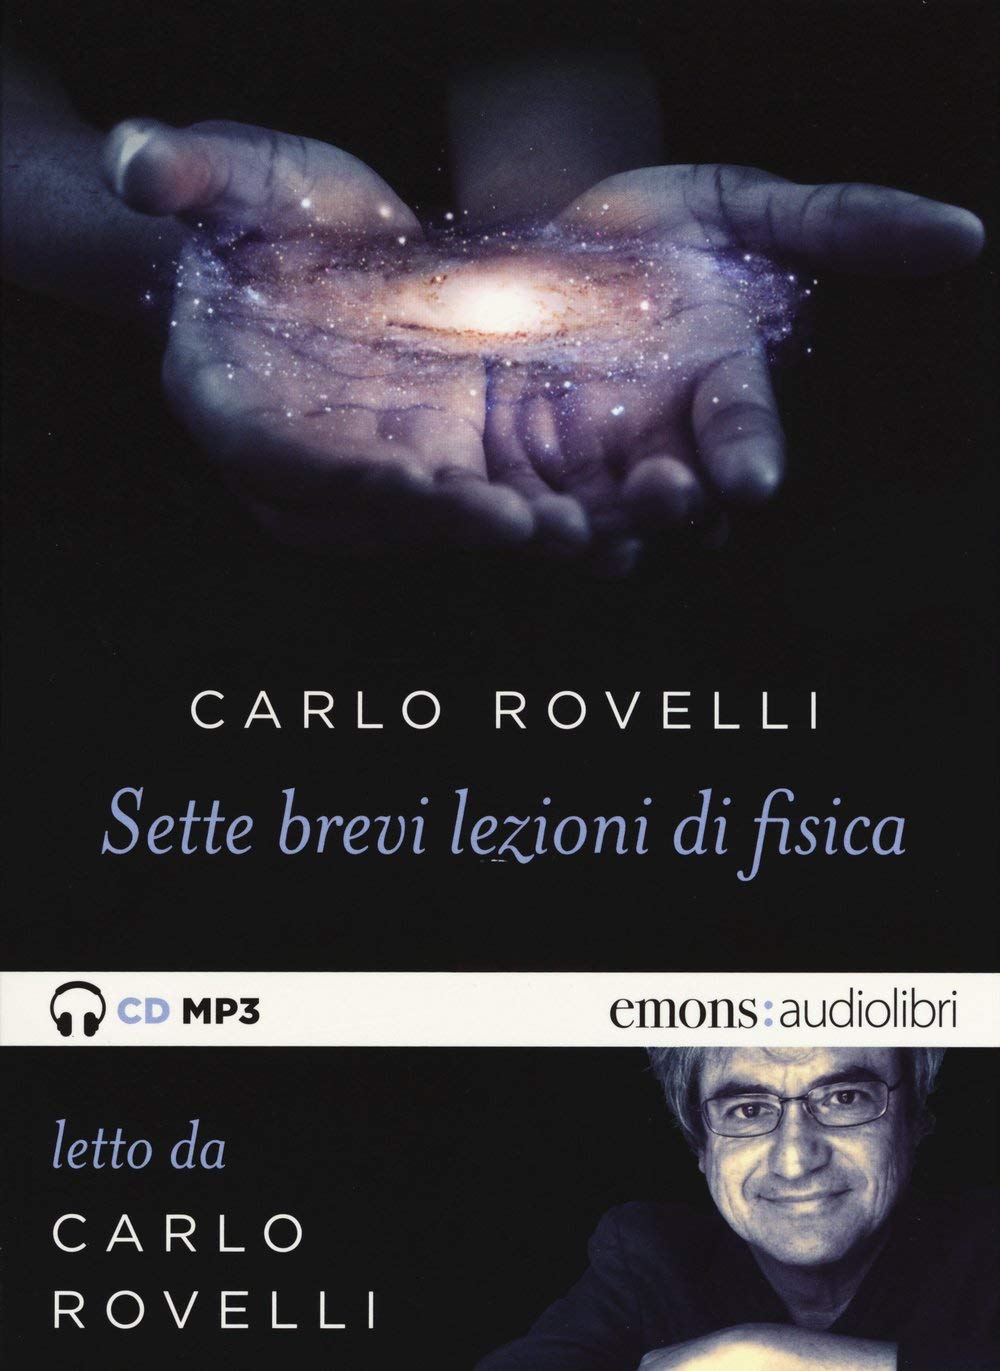 Audiolibro Carlo Rovelli - Rovelli, Carlo (Audiolibro) NUOVO SIGILLATO, EDIZIONE DEL 12/11/2015 SUBITO DISPONIBILE